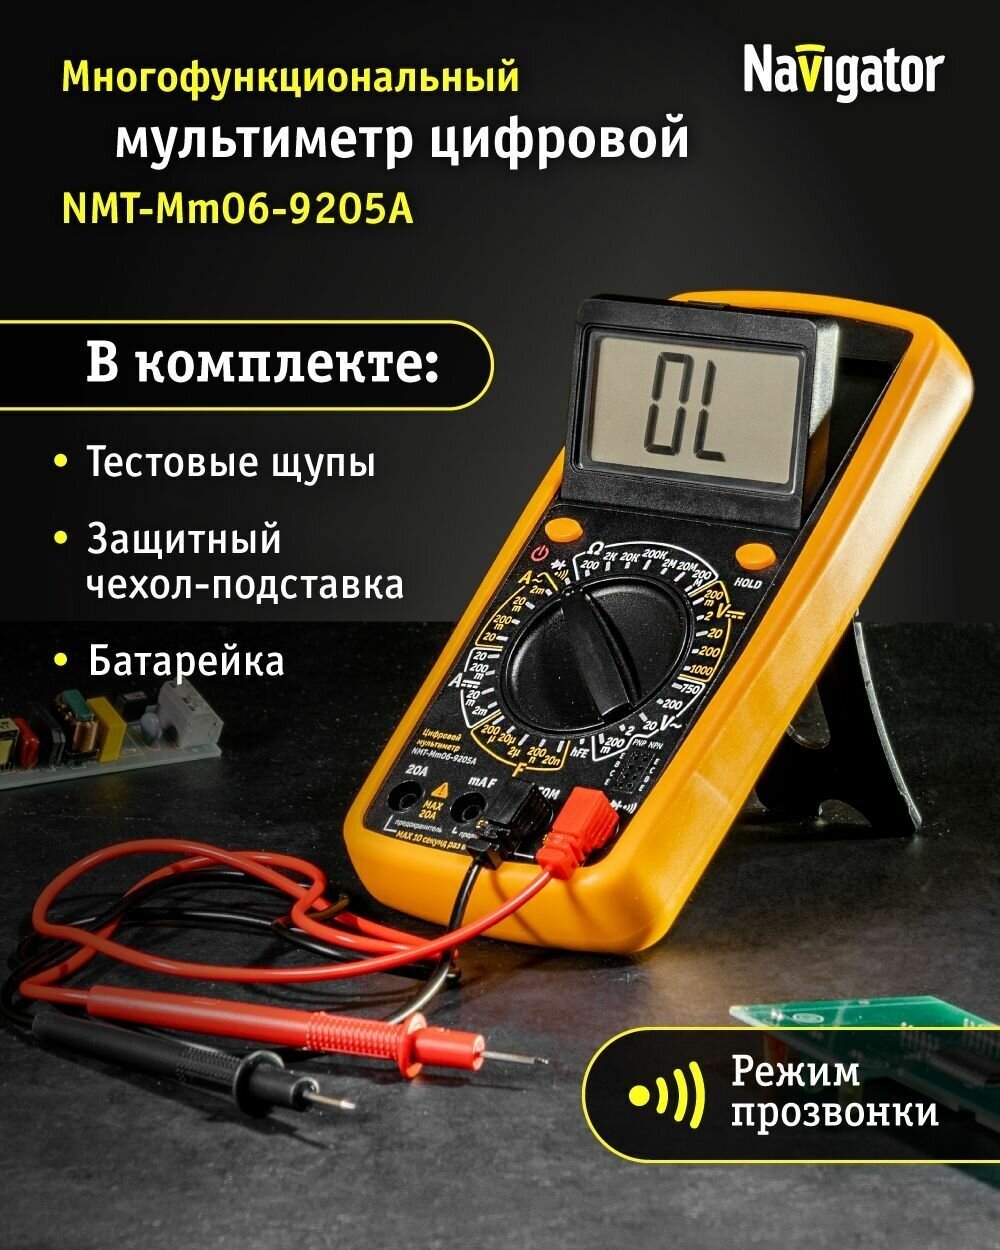 Мультиметр цифровой Navigator 93 589 NMT-Mm04-M300 (M300)